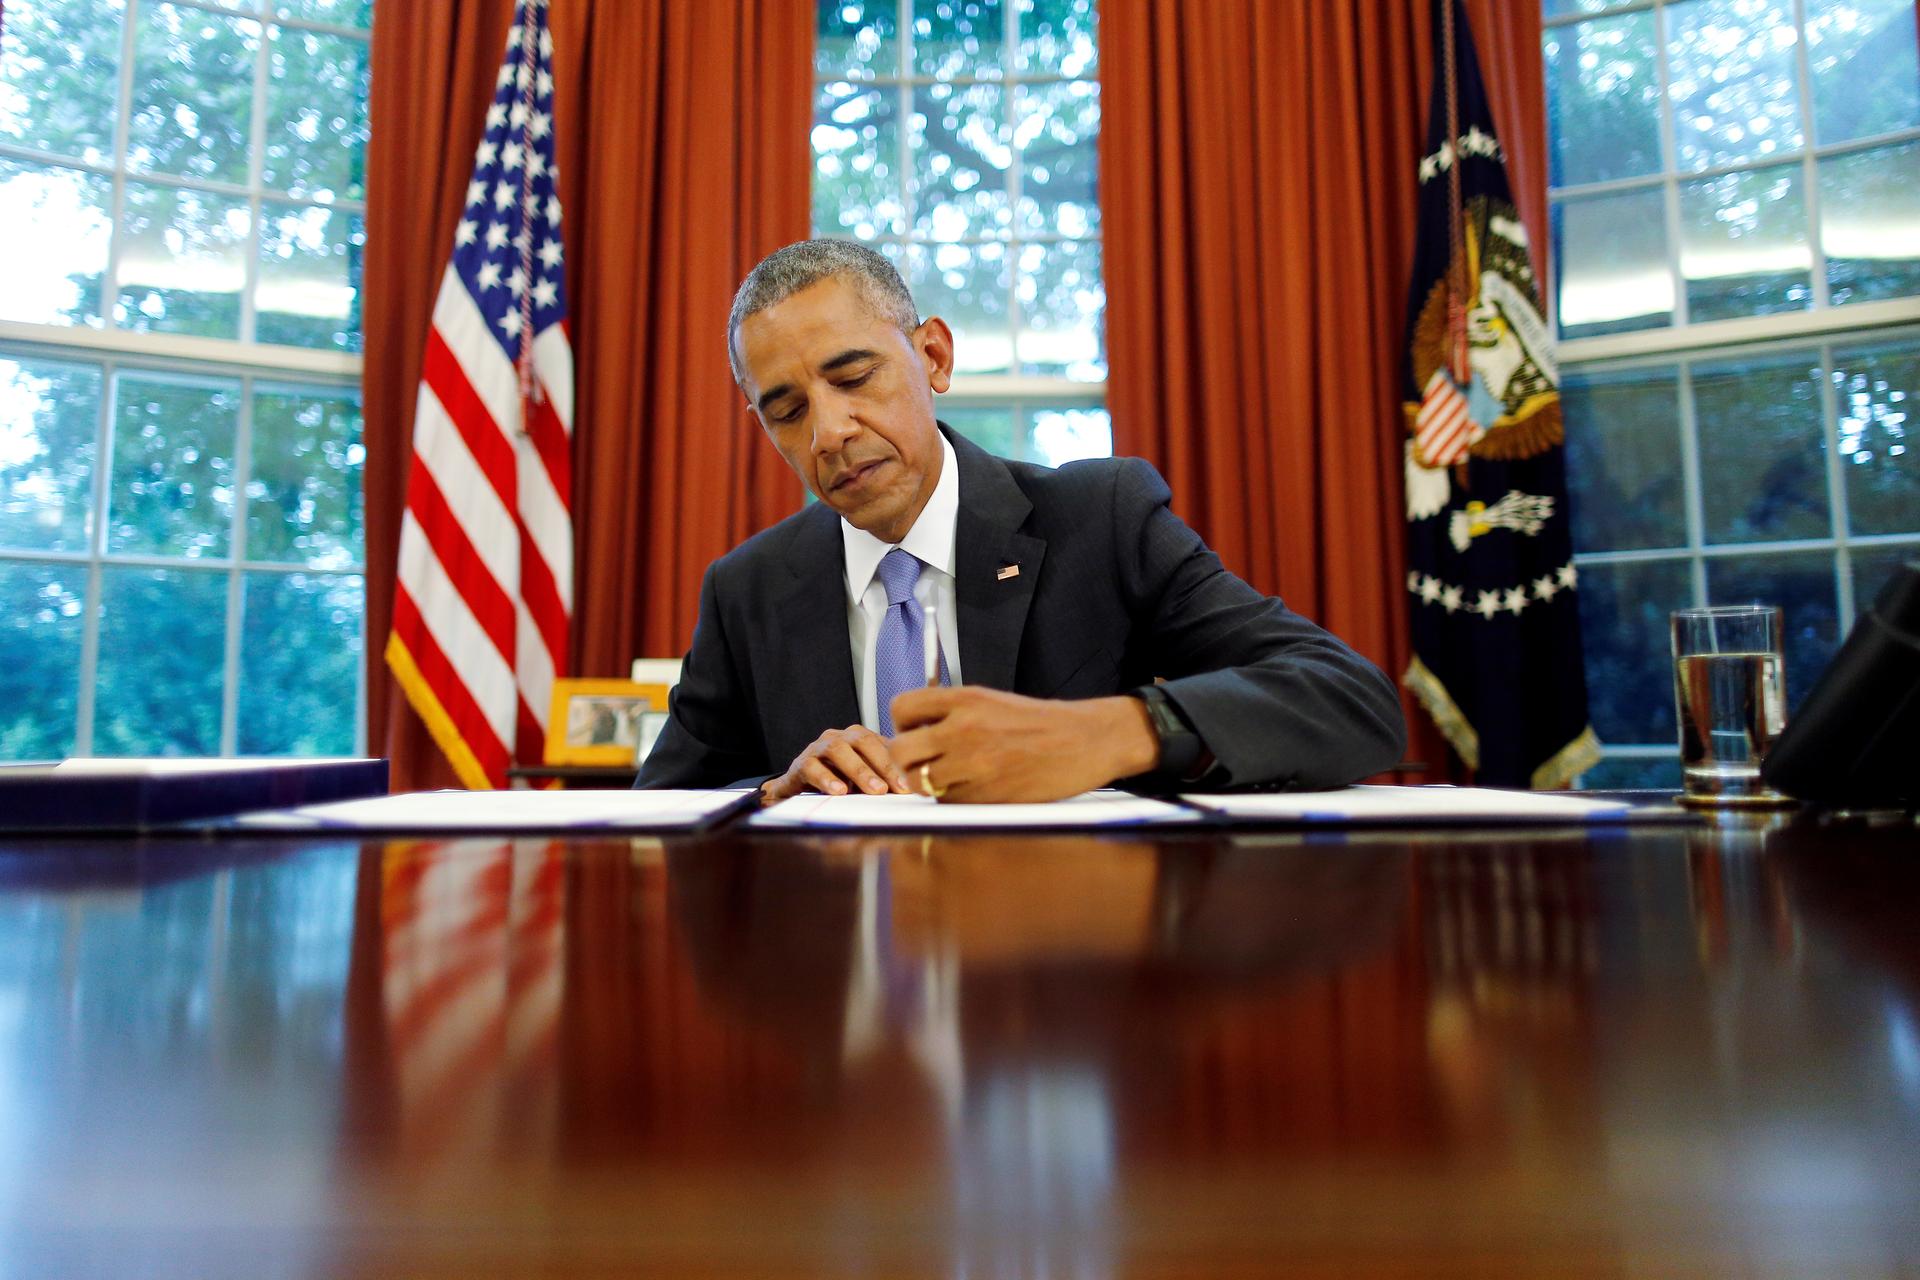 Obama at desk